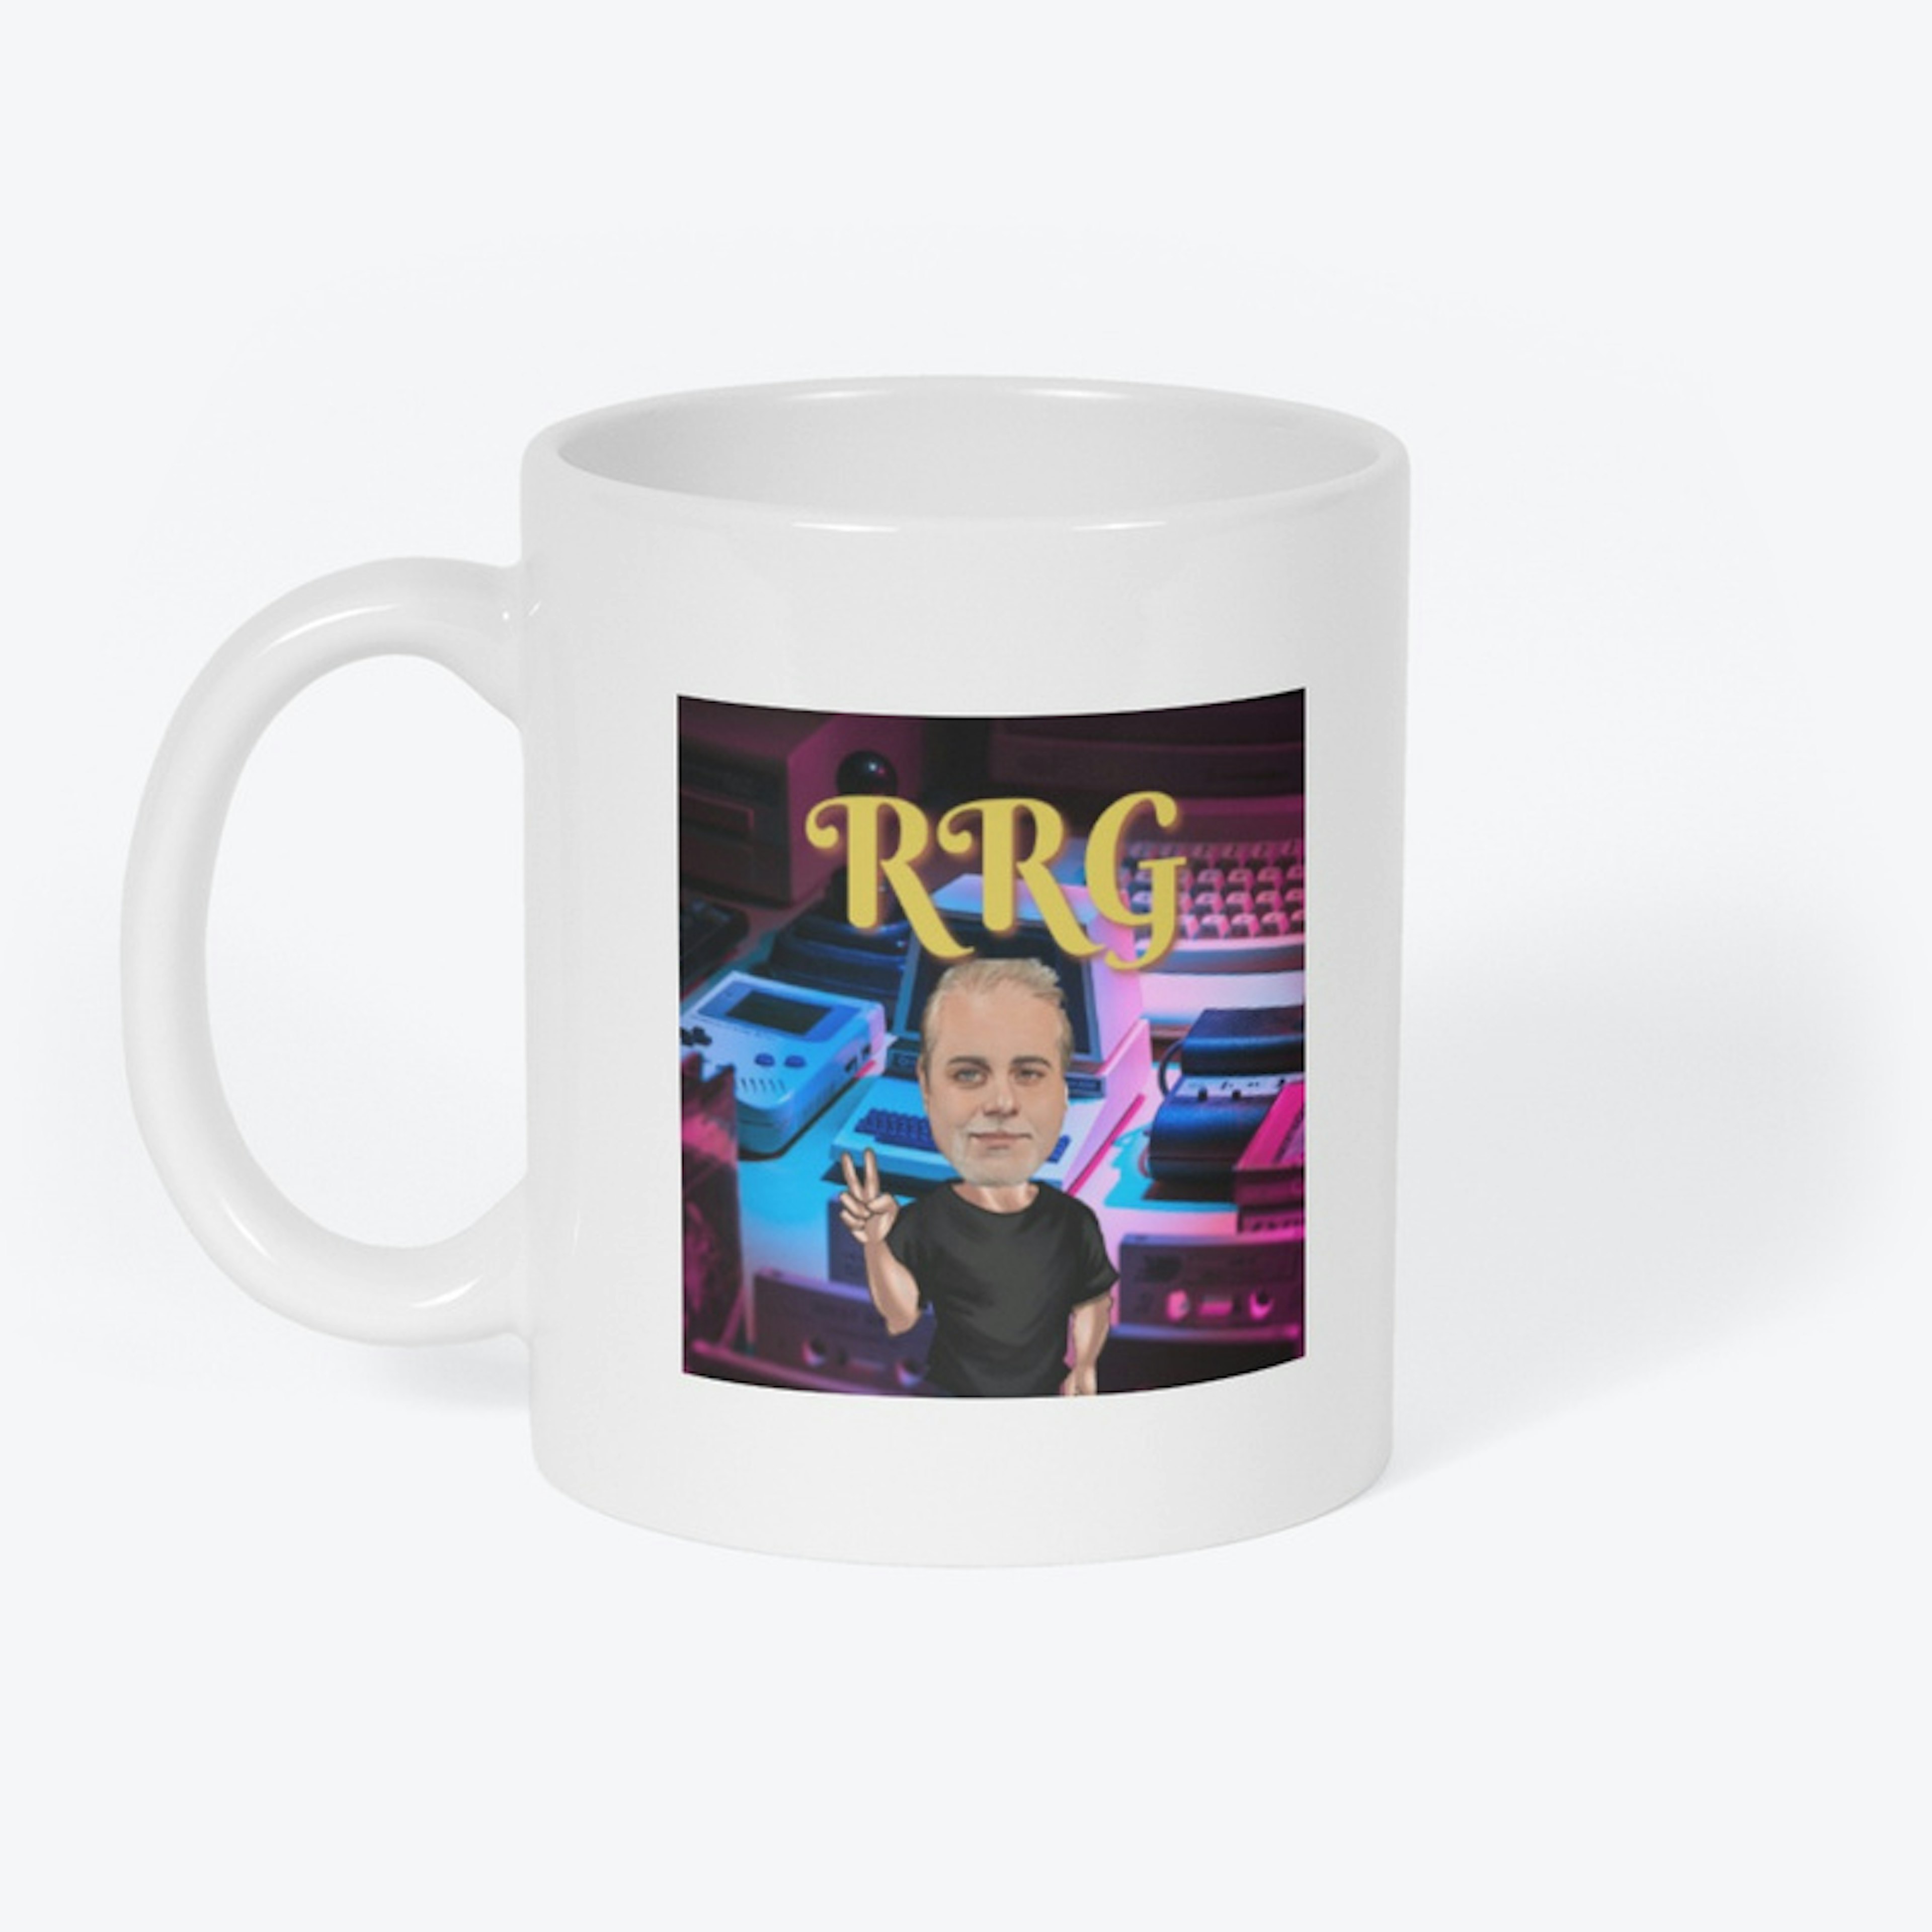 RRG Colored Mugs